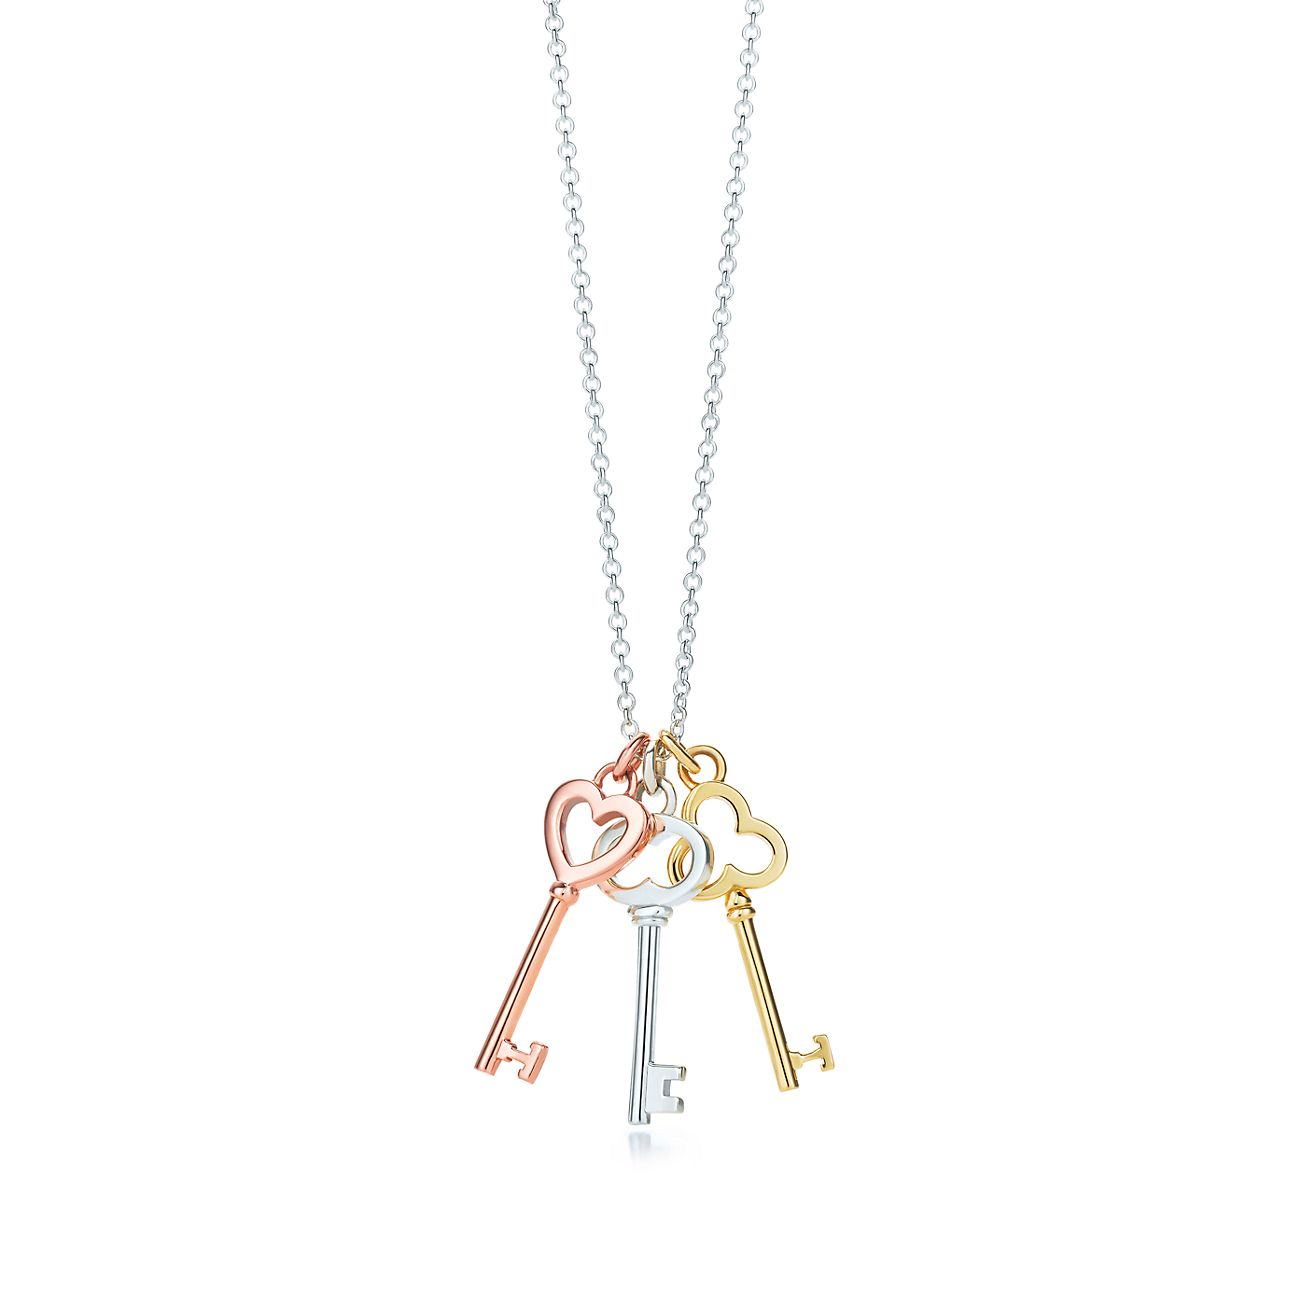 Tiffany Keys mini three-key pendant in 